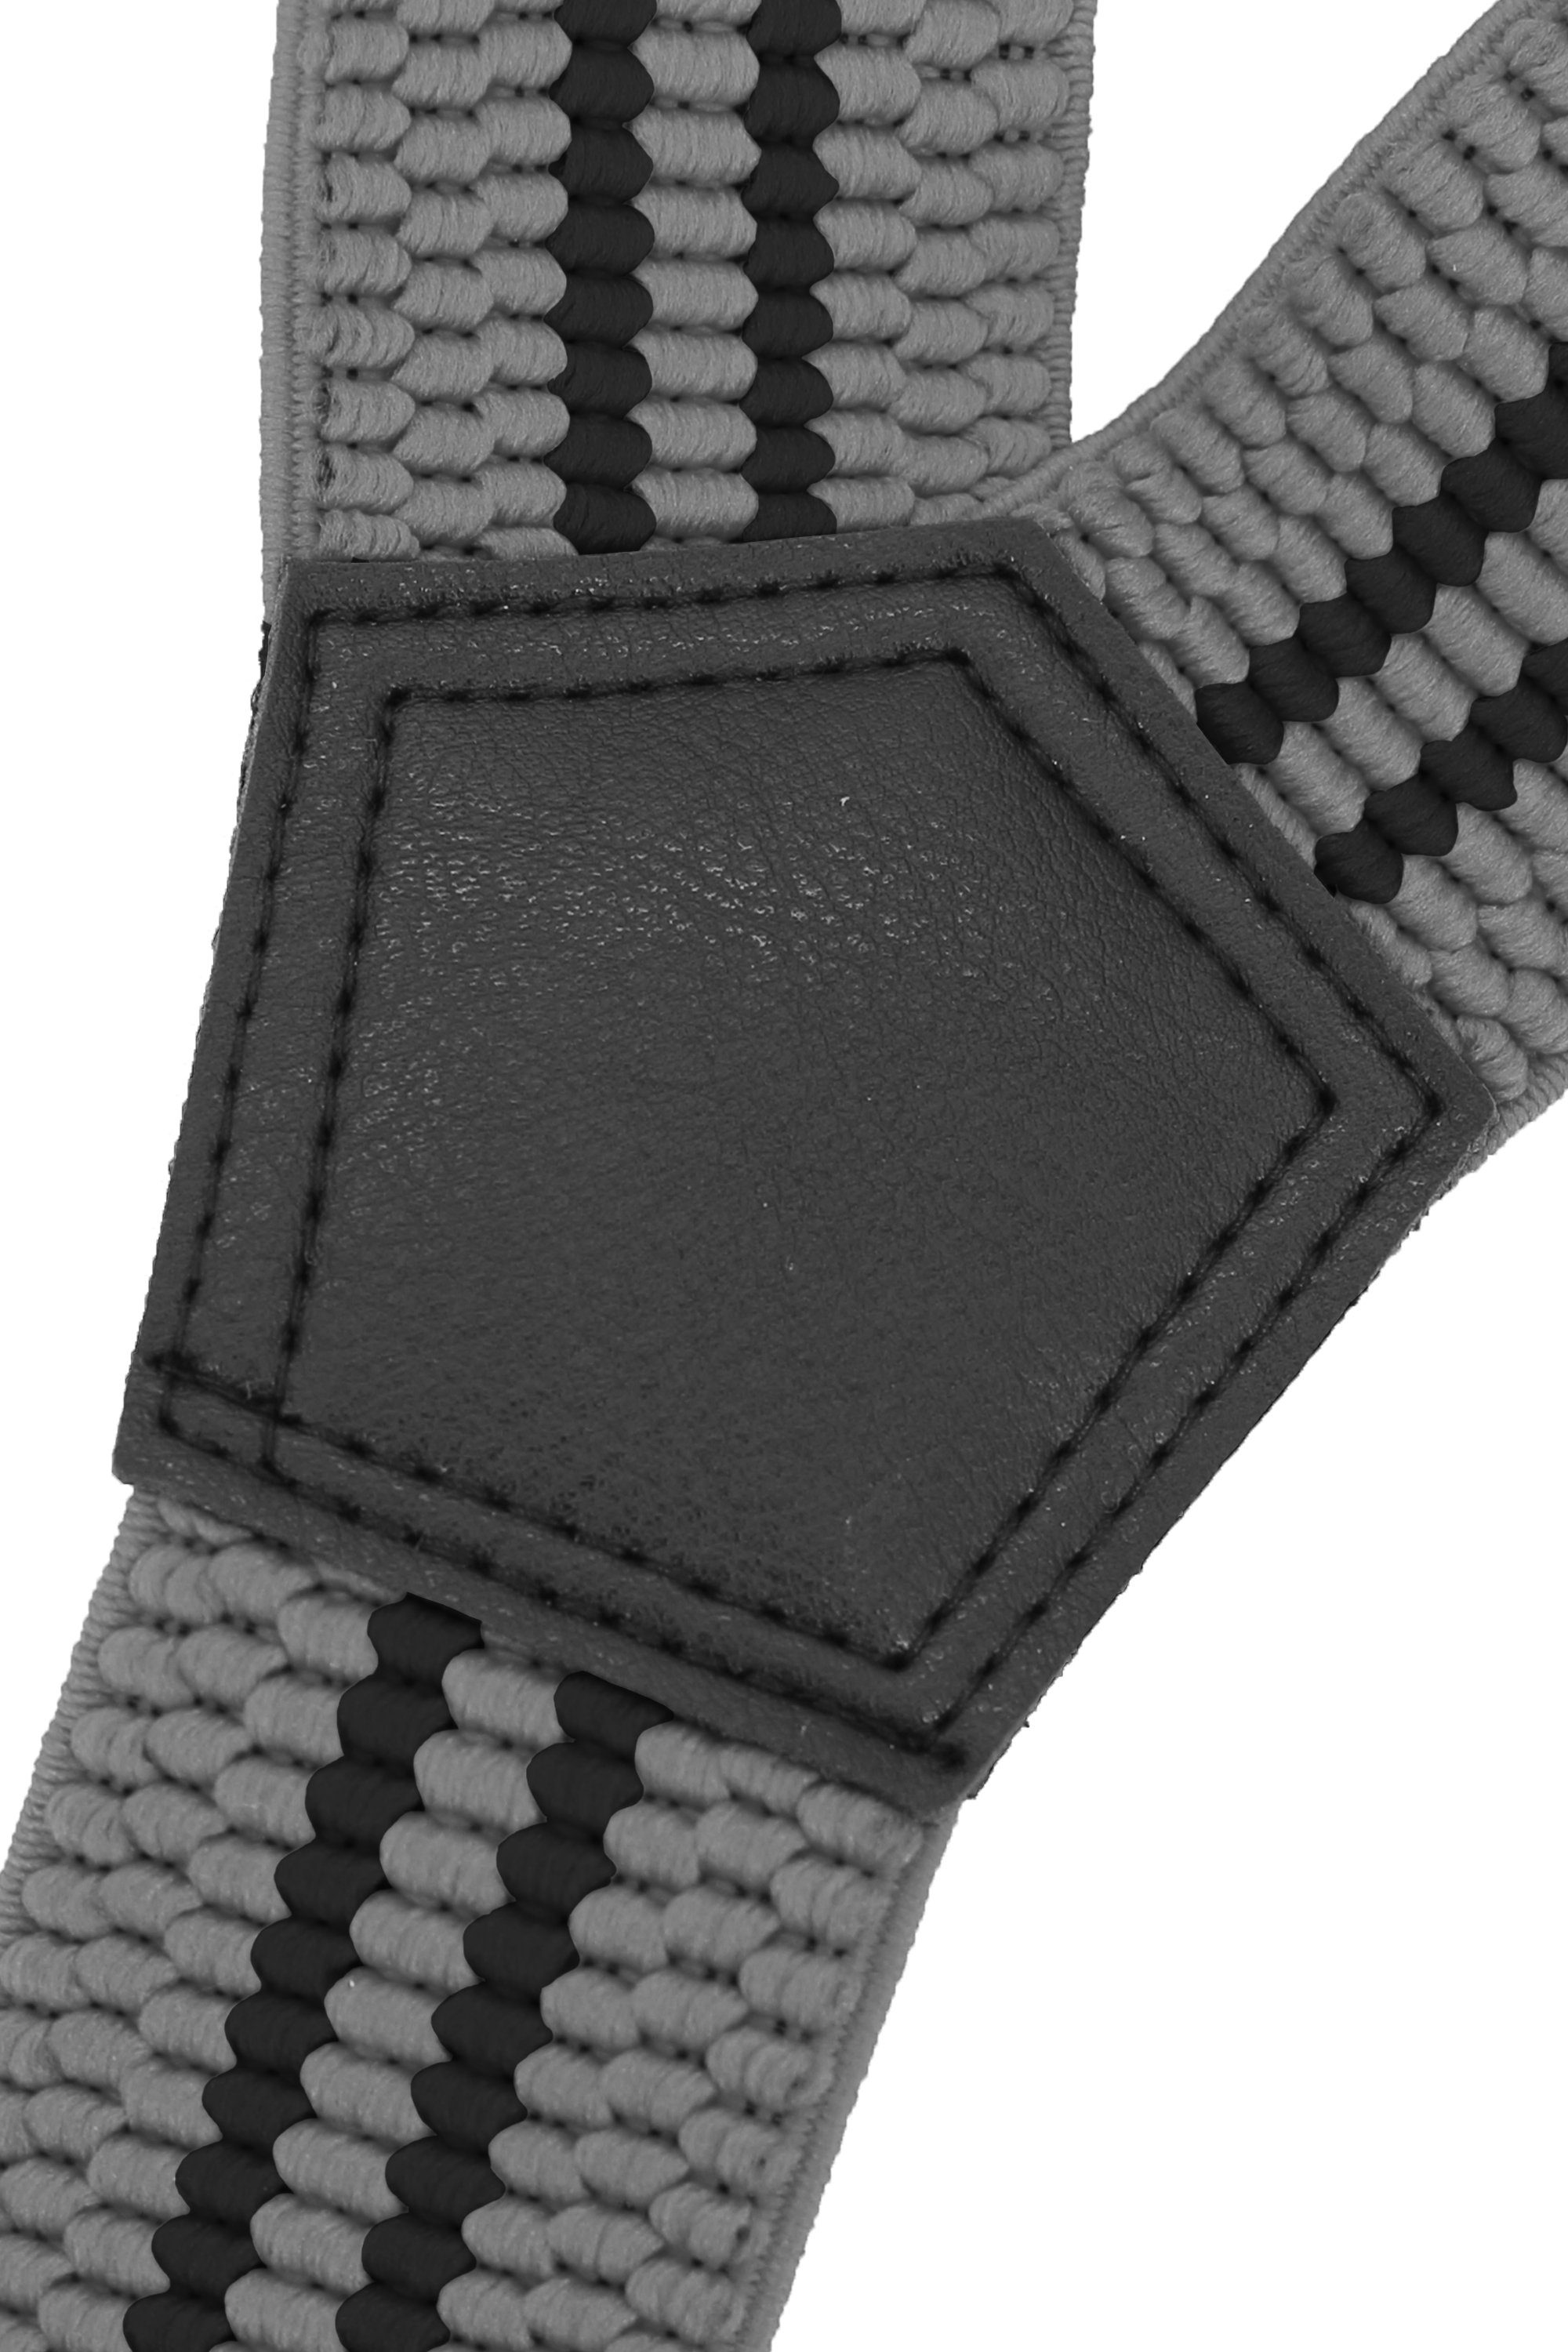 Fabio Farini Hosenträger 4cm Breites Y-Design verstellbar Clipverschluss, starken Grau mit Streifen mit Streifen) extra schwarzen Grau (schwarze